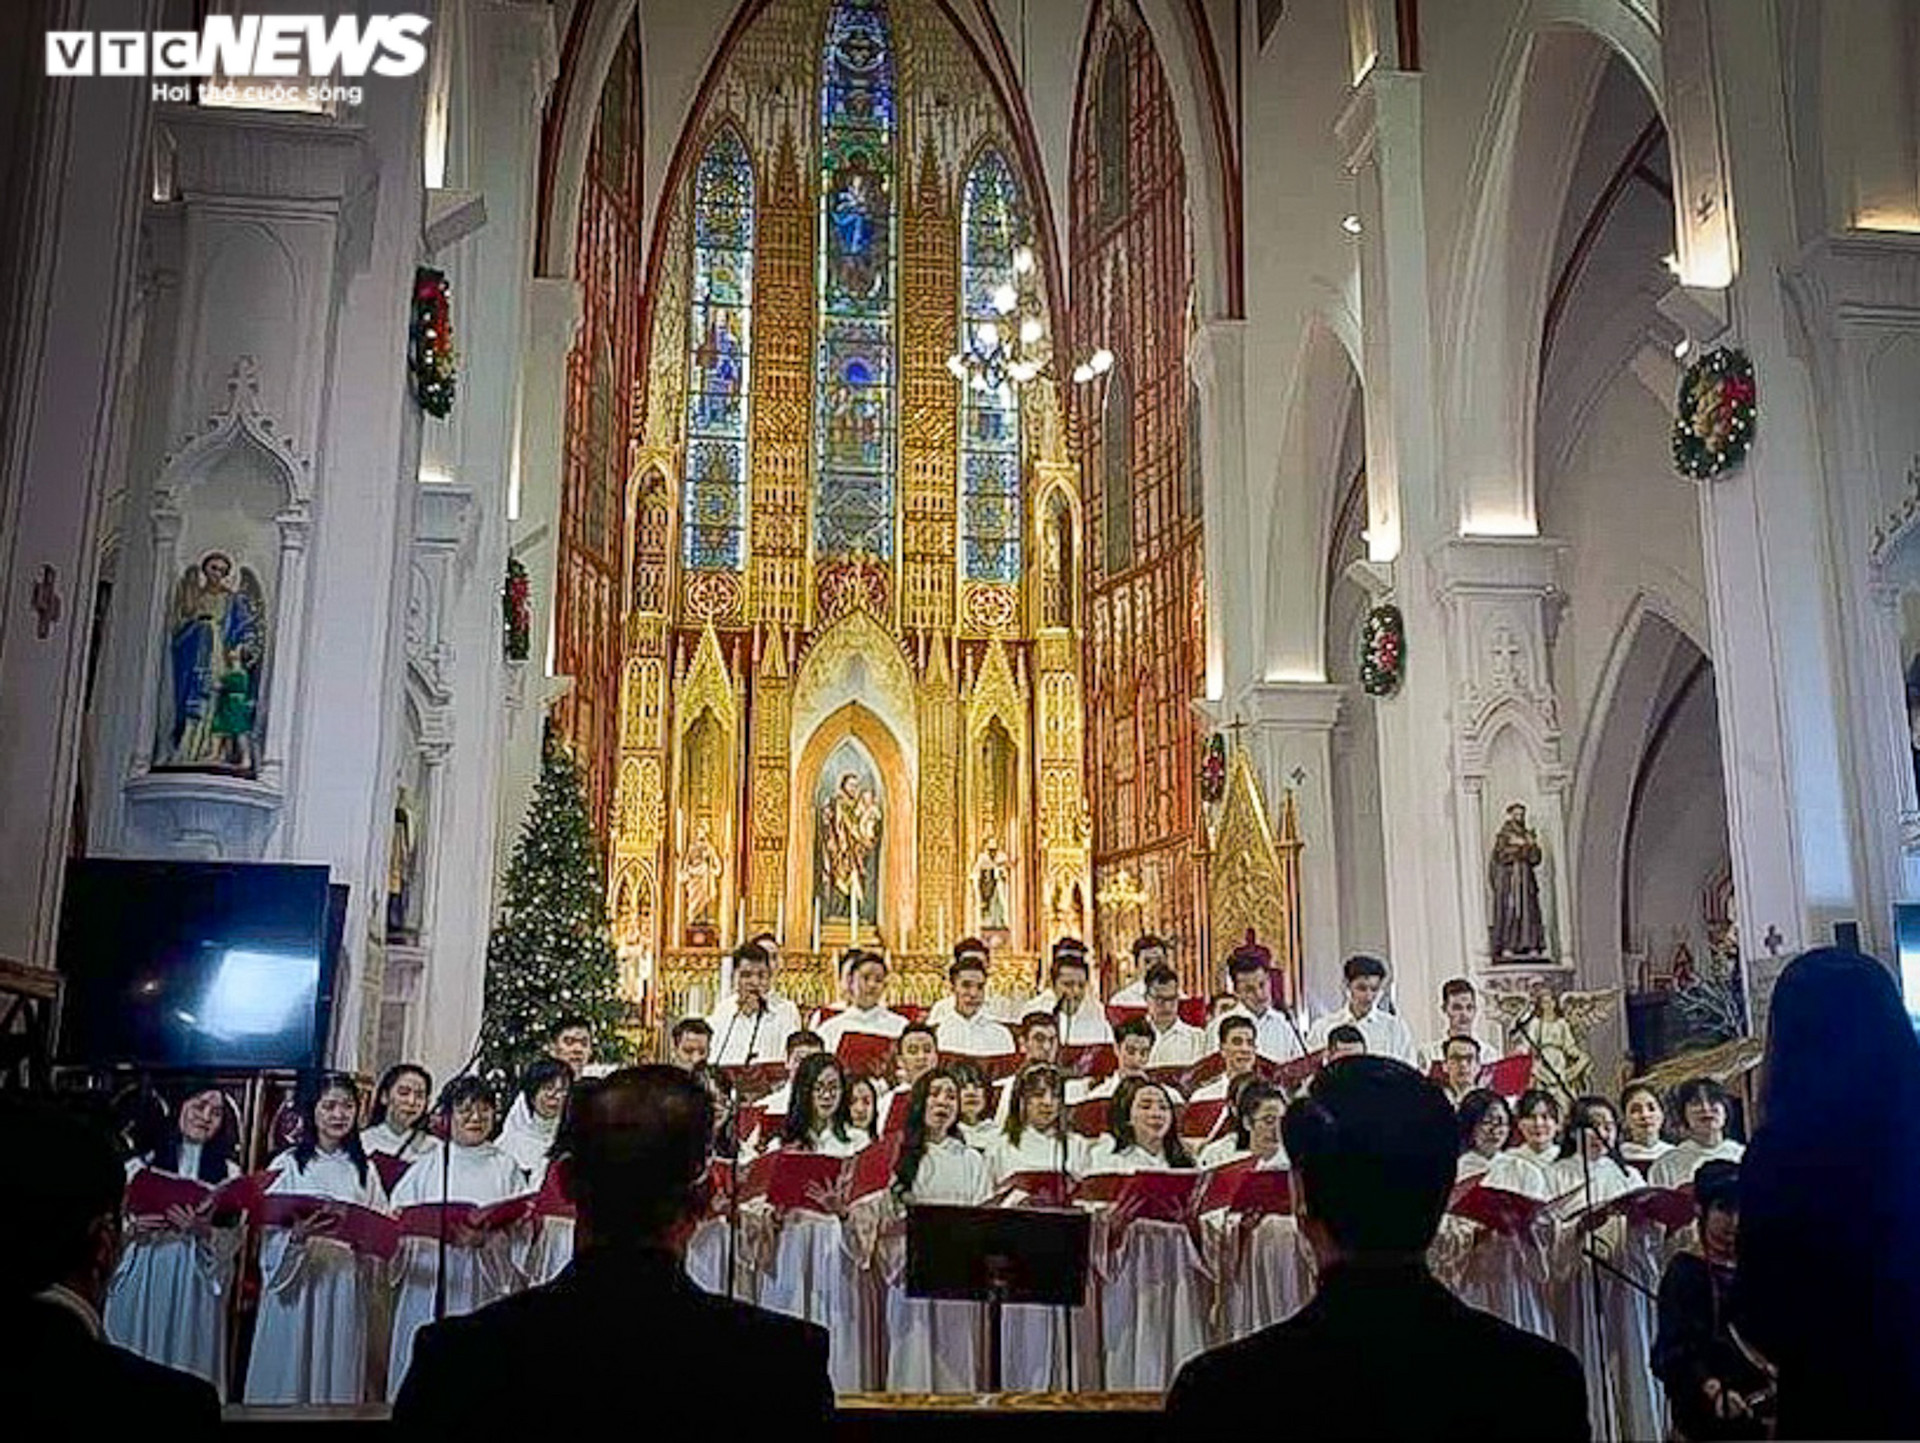 Đêm Noel ở Hà Nội: Nhà thờ lớn vắng lặng, hàng Mã ken đặc người - 10